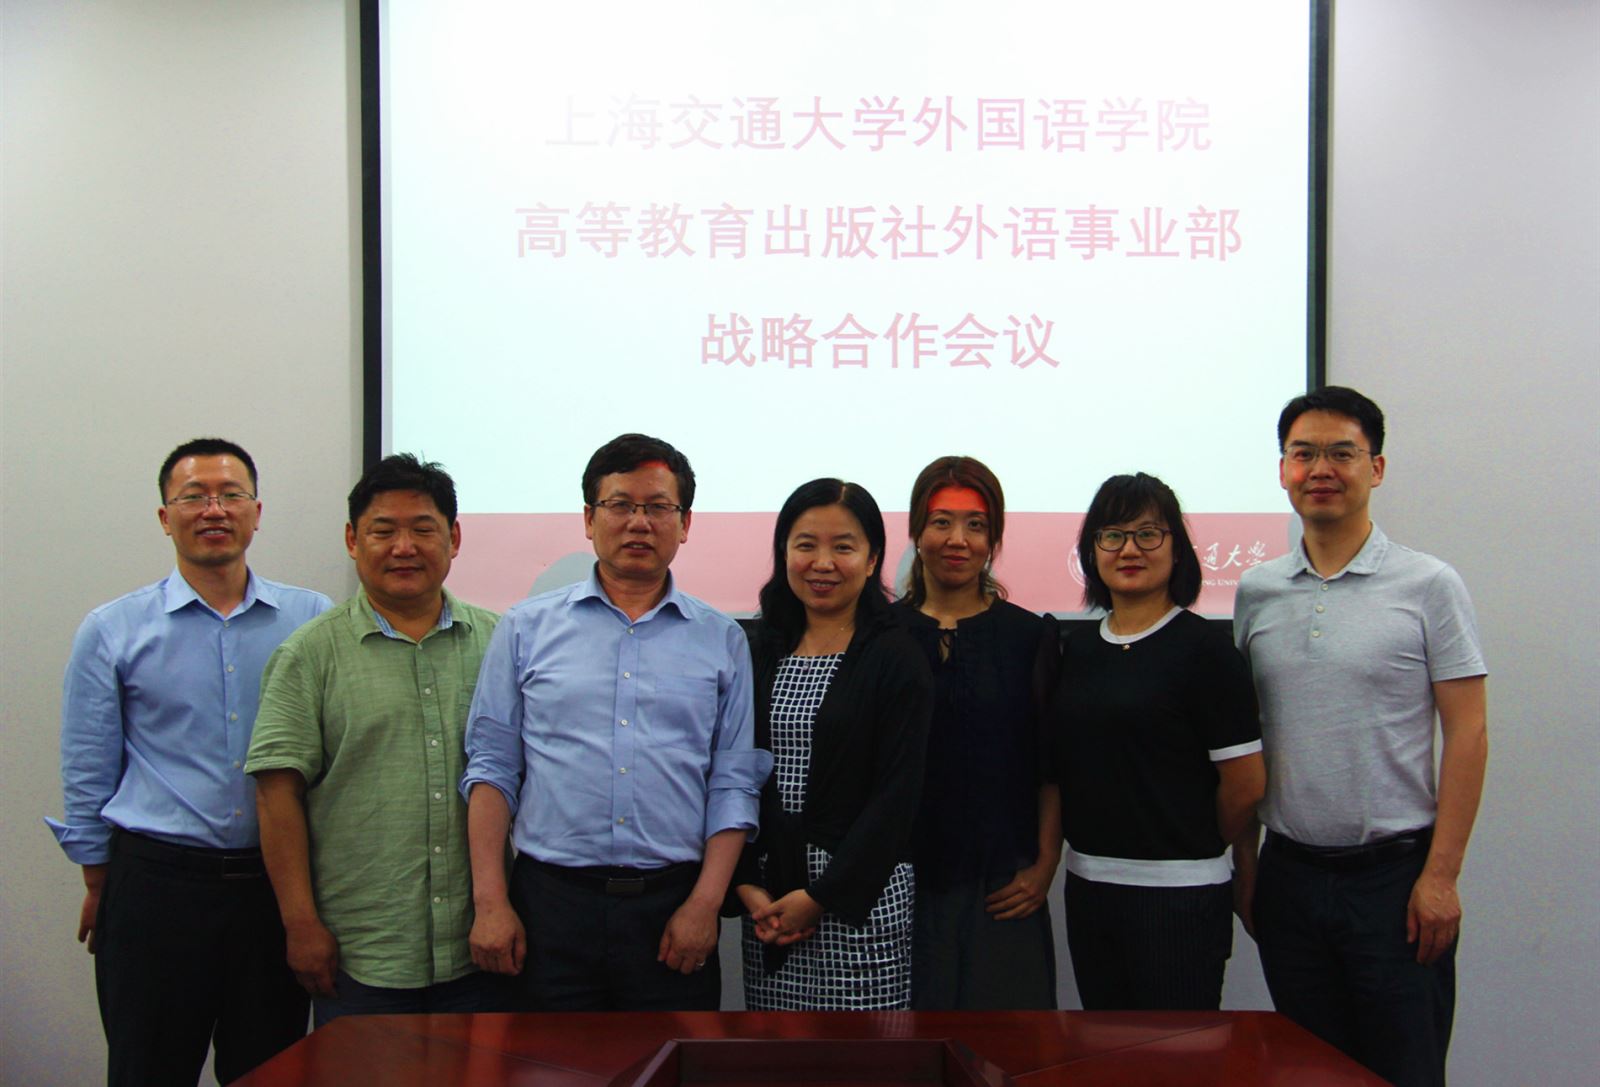 高等教育出版社外语事业部来访上海交通大学外国语学院 综合新闻 上海交通大学外国语学院